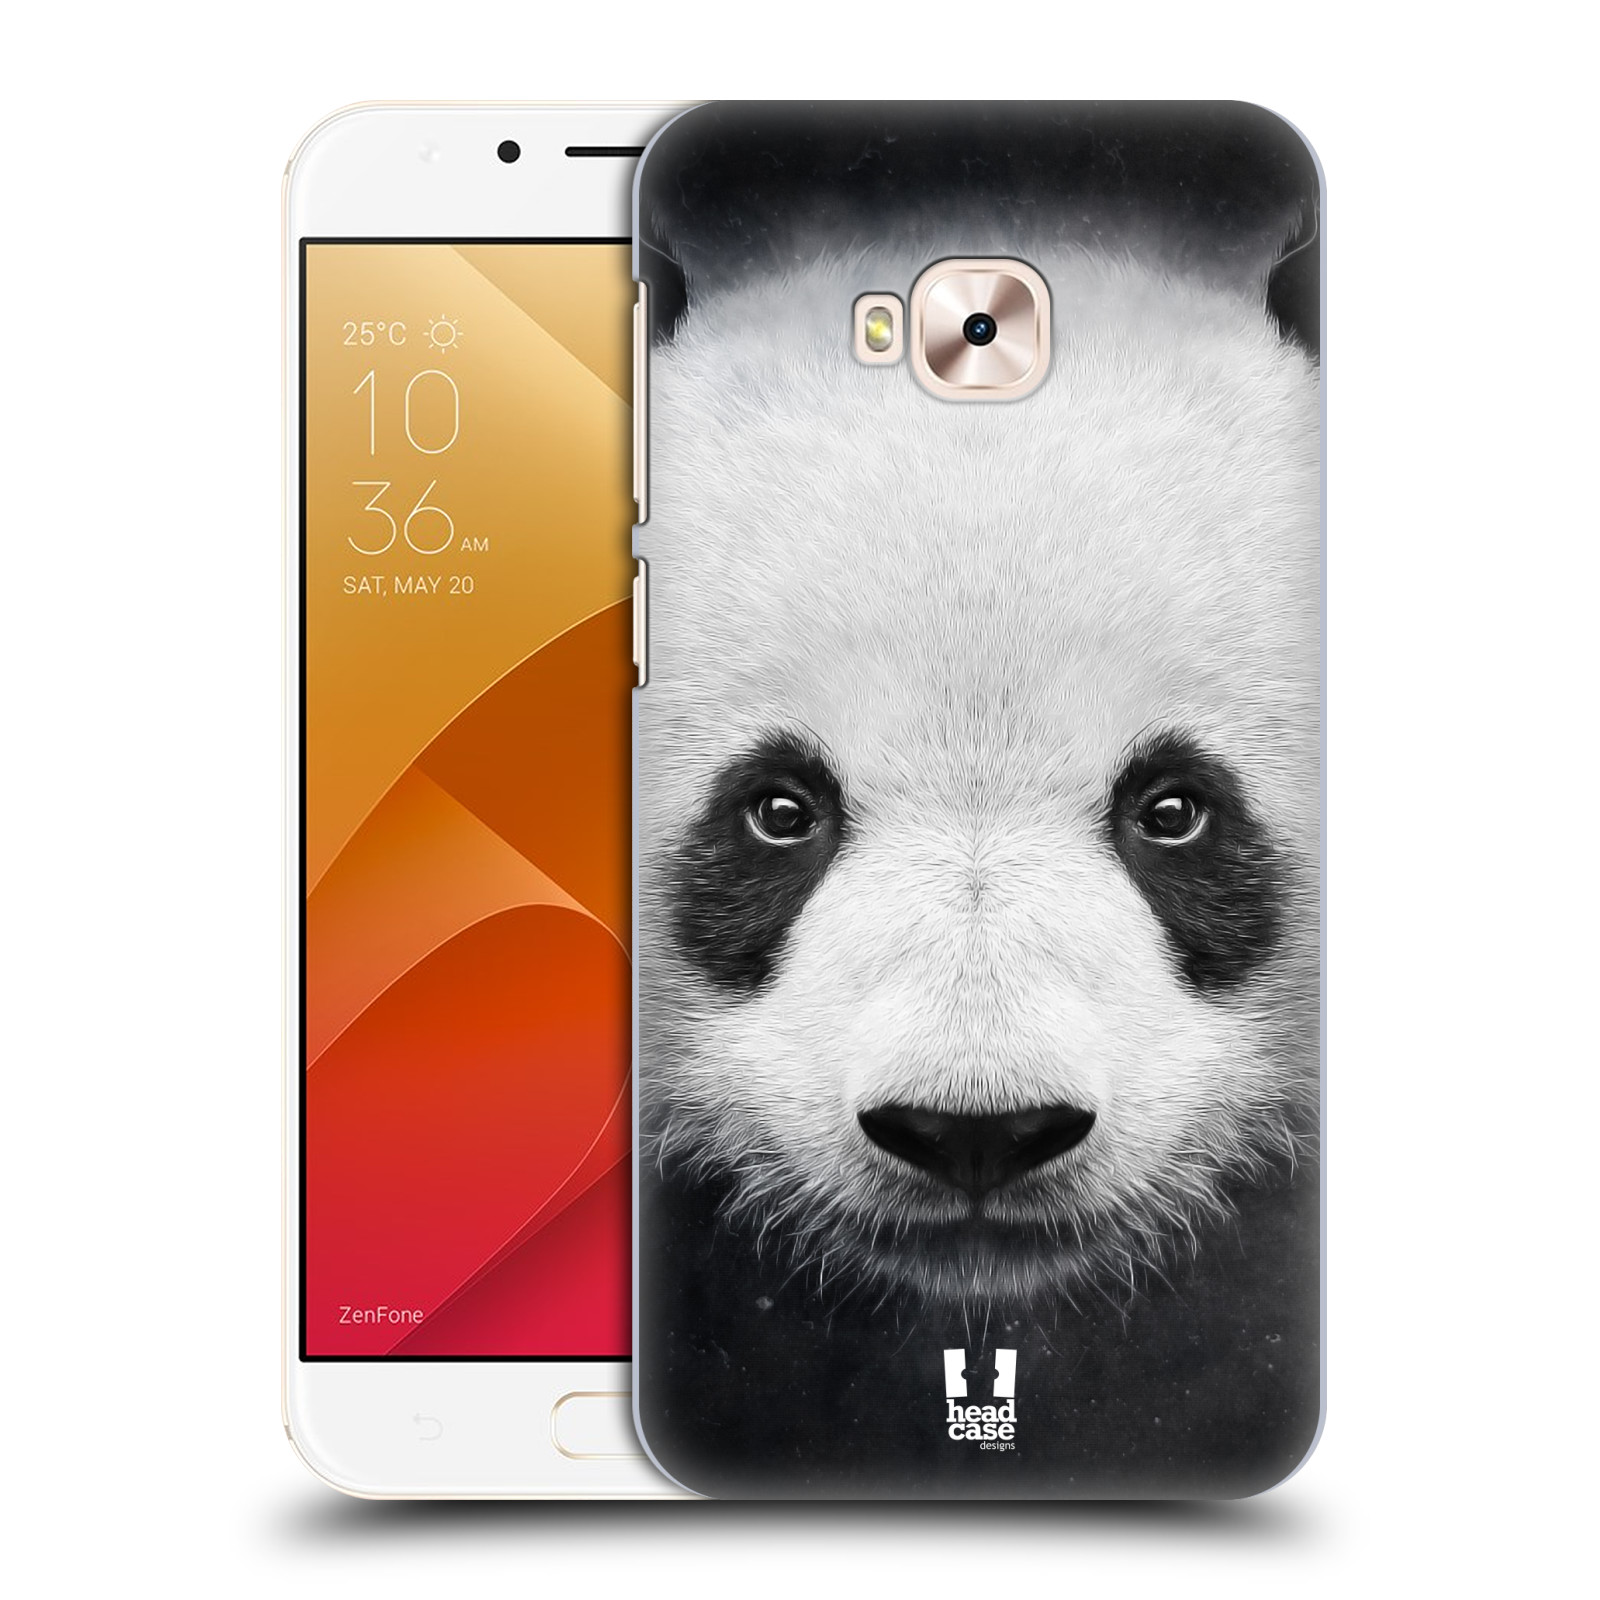 HEAD CASE plastový obal na mobil Asus Zenfone 4 Selfie Pro ZD552KL vzor Zvířecí tváře medvěd panda